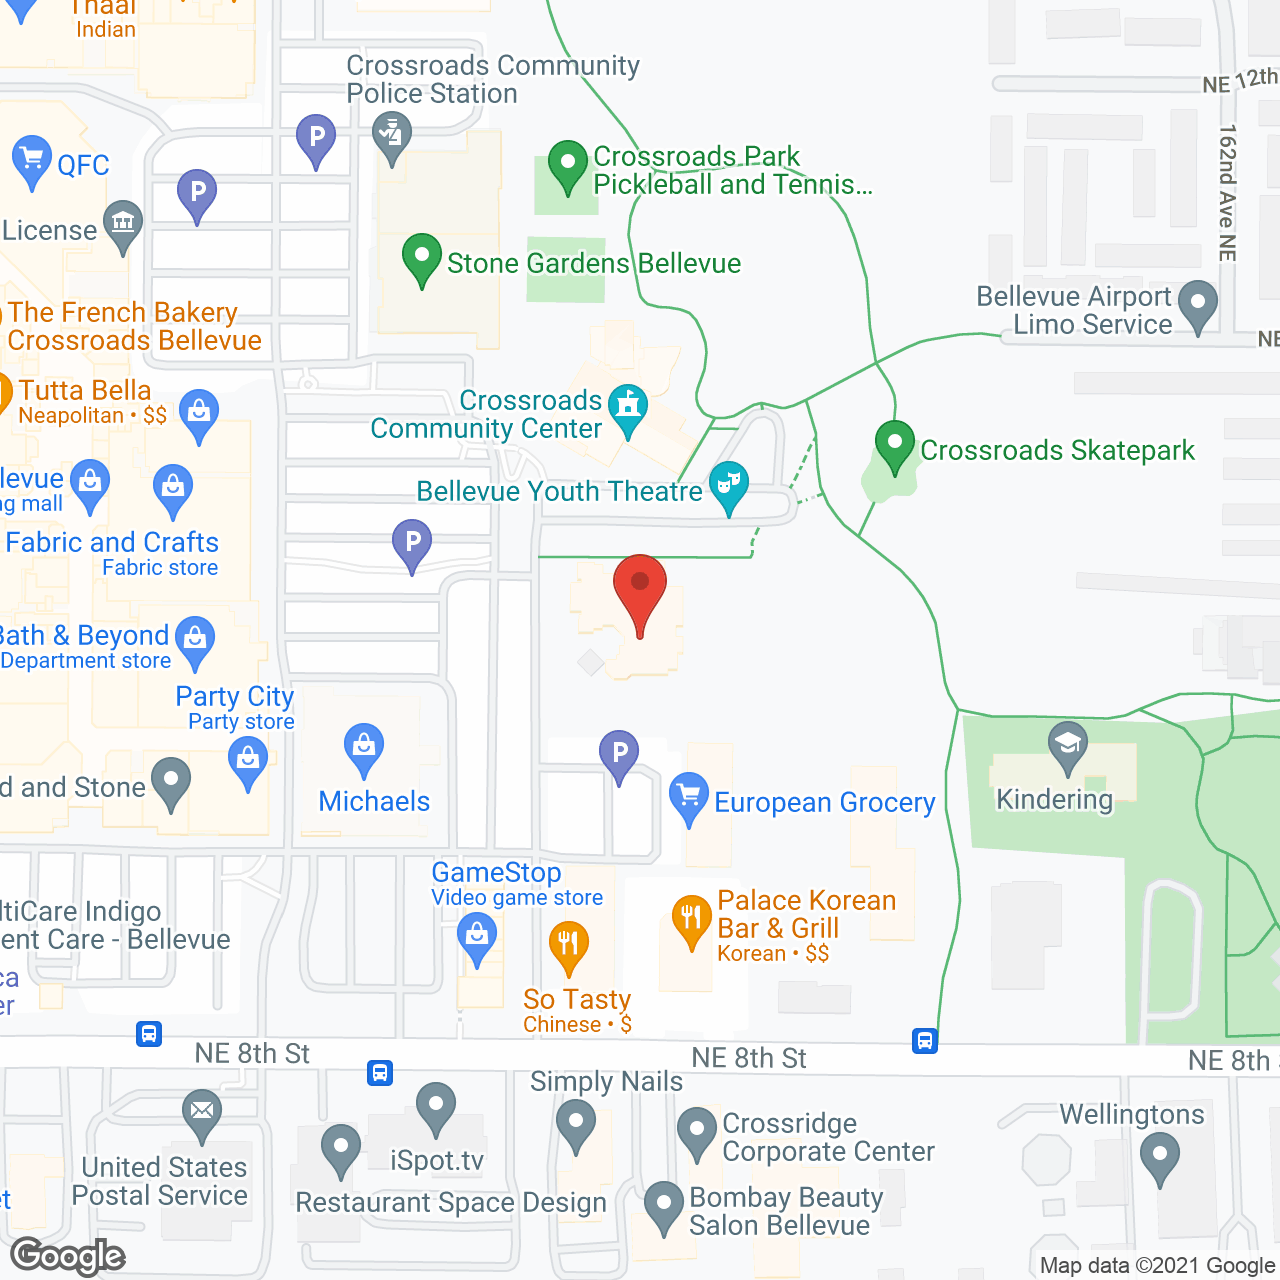 Sunrise of Bellevue in google map